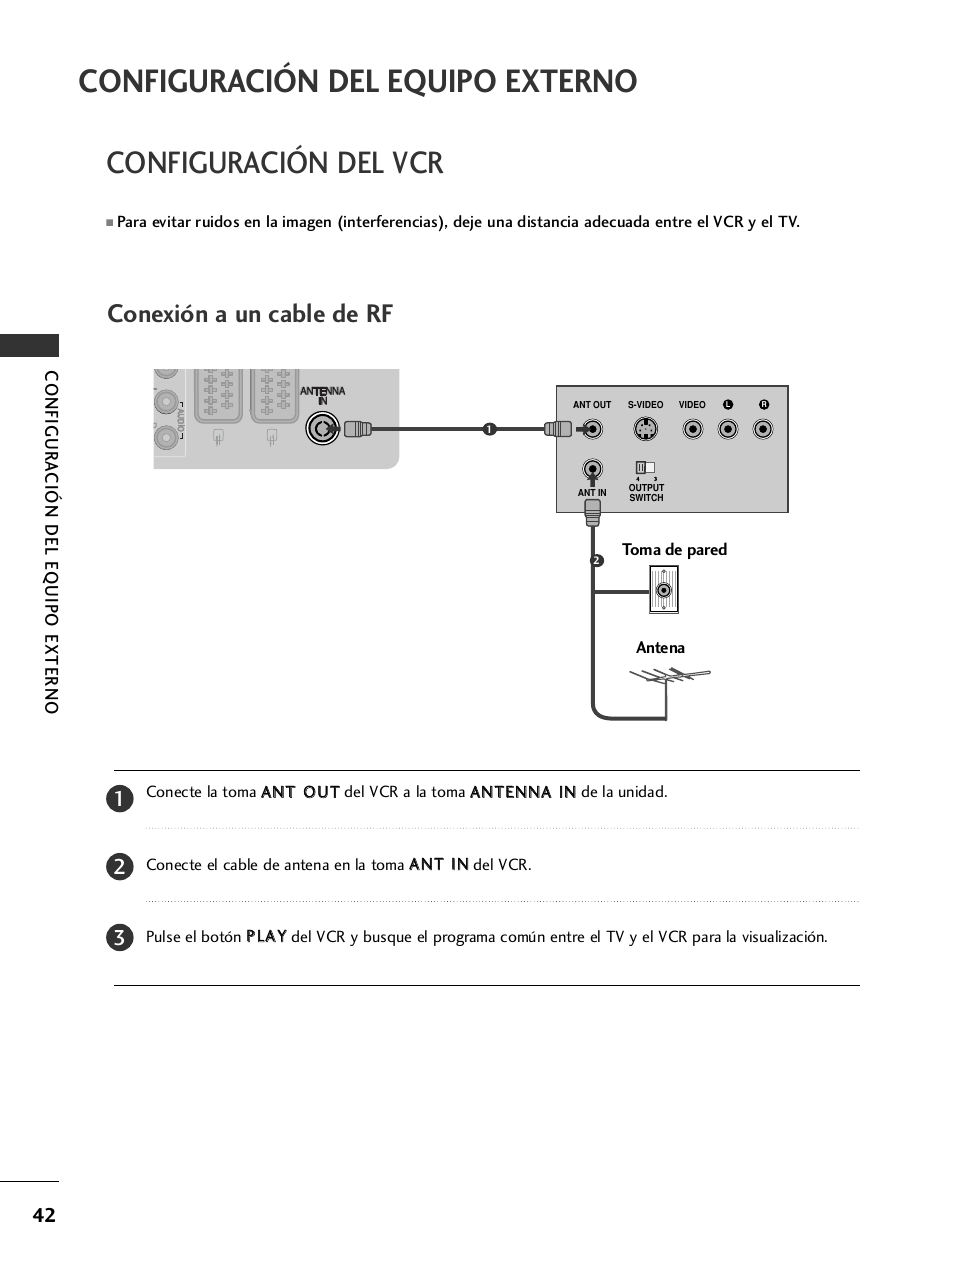 Configuración del vcr, Configuración del equipo externo, Conexión a un cable de rf | LG 32LH40 Manual del usuario | Página 44 / 180